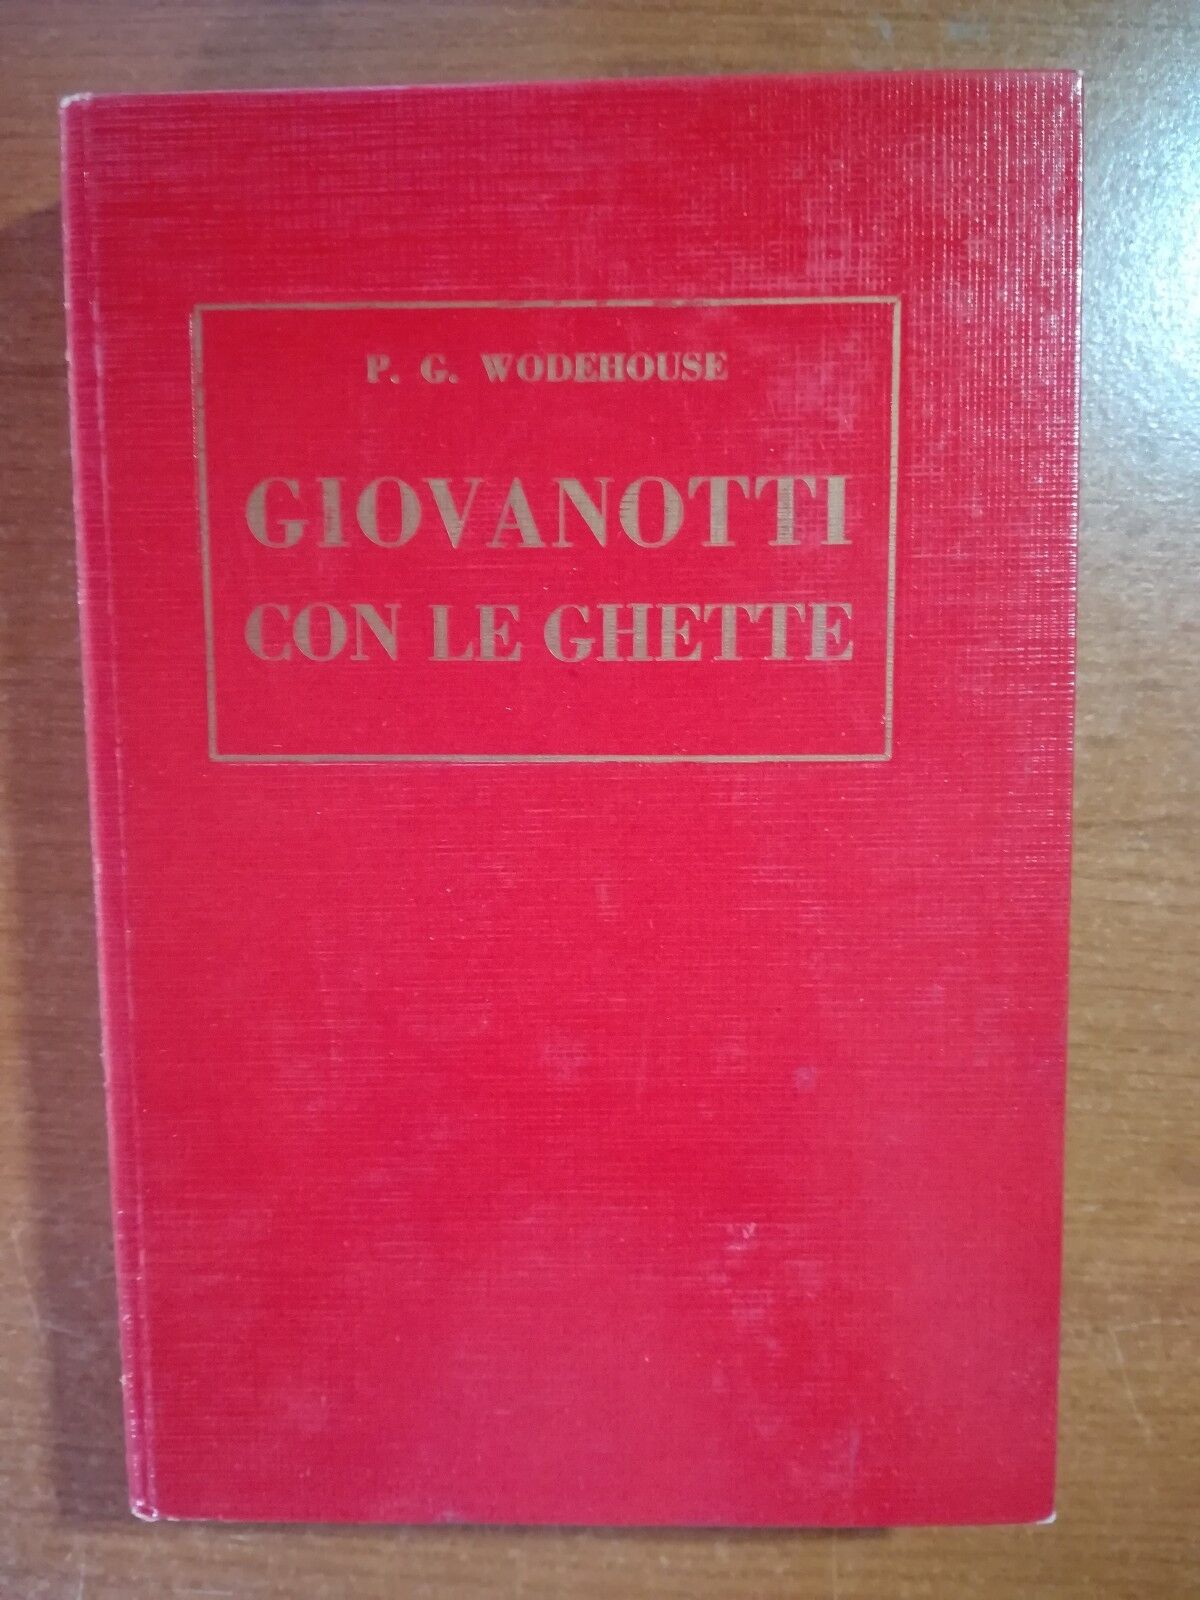 Giovanotti  con le ghette - P.G. Wodehouse - Bietti - 1948 - M